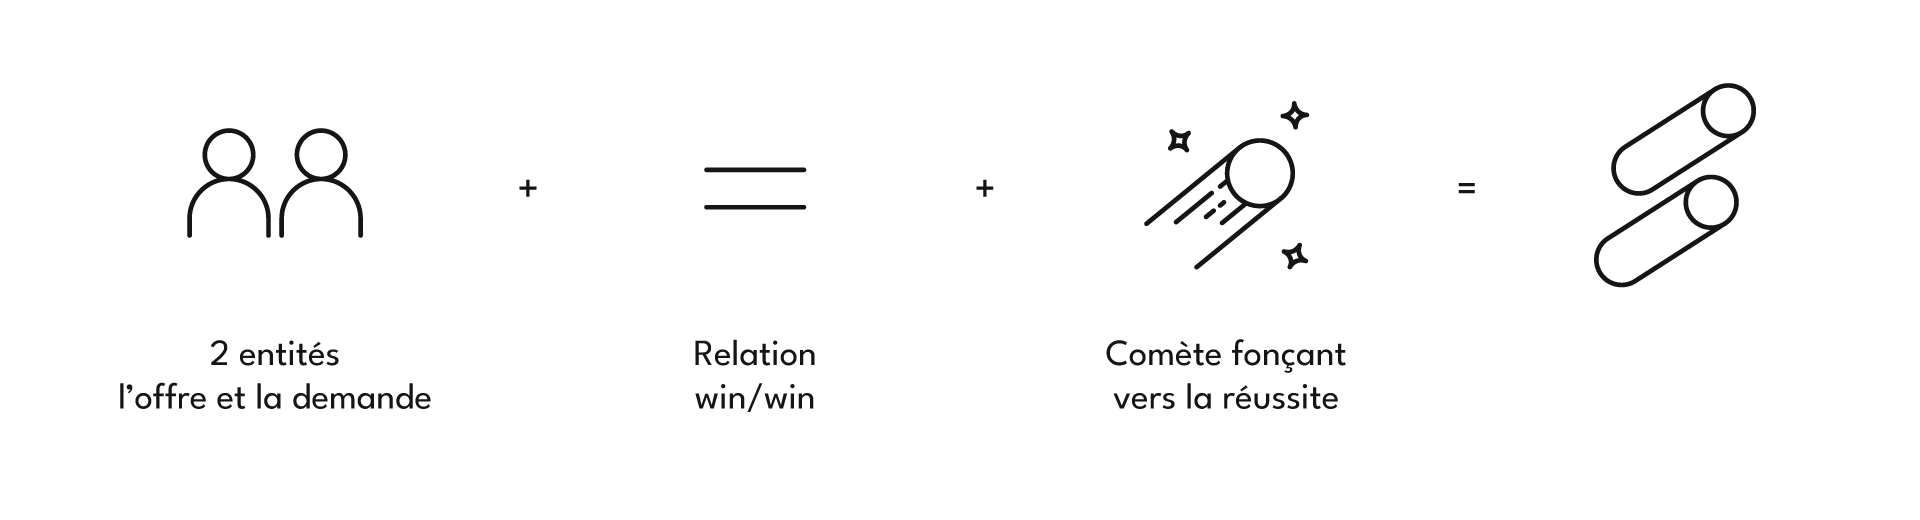 Explication du logo Success Bay comme une comète forçant vers la réussite, une relation win win et la relation entre l'offre et la demande.